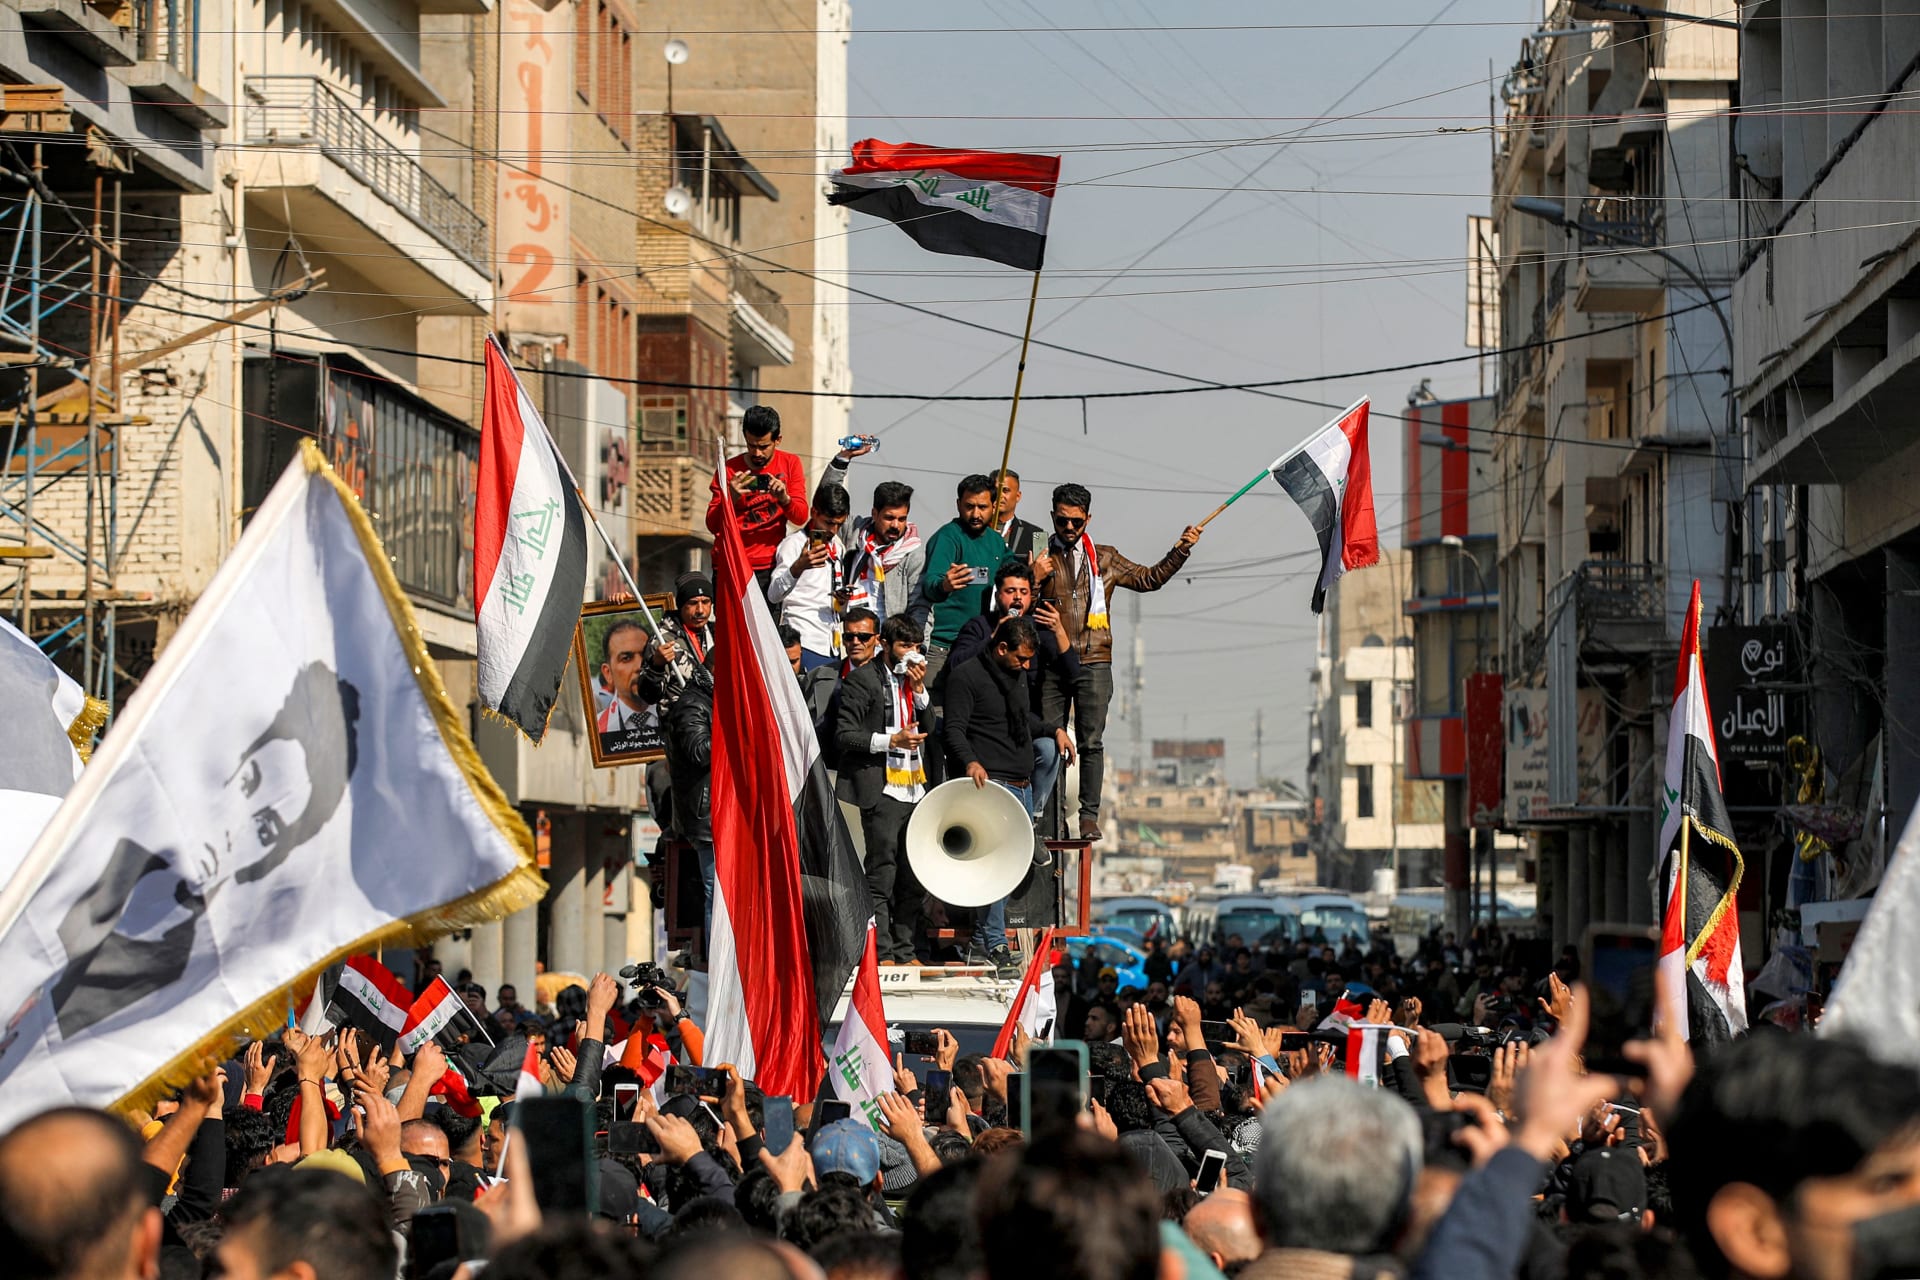 عراقيون يحتجون في بغداد يوم 25 يناير/كانون الثاني رفضا لتراجع قيمة الدينار العراقي 